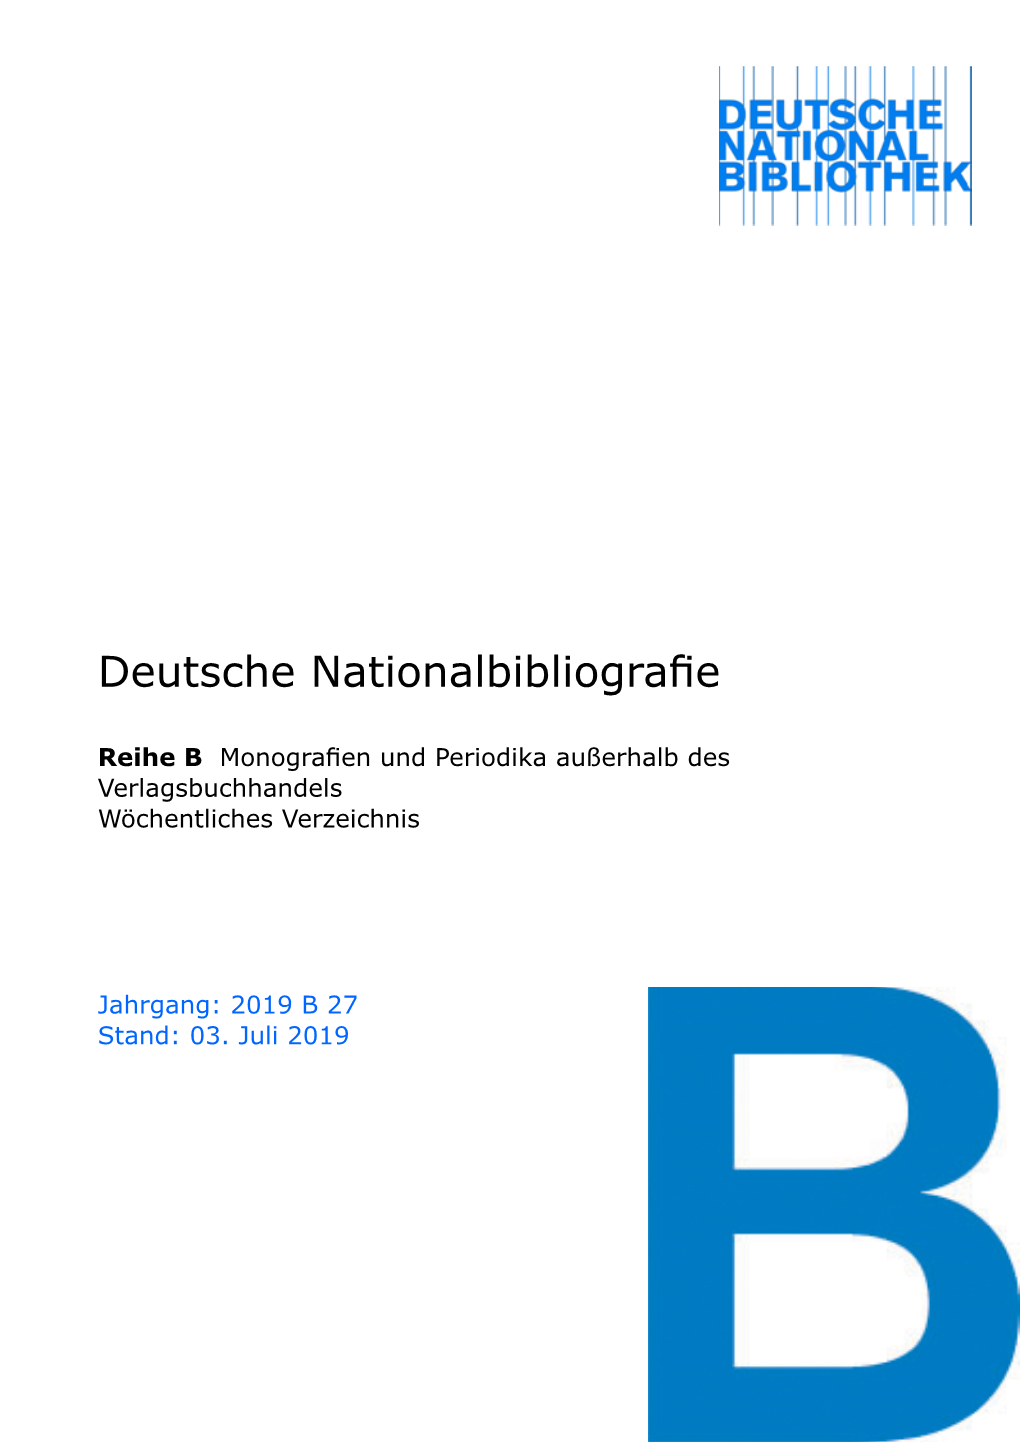 Deutsche Nationalbibliografie 2019 B 27